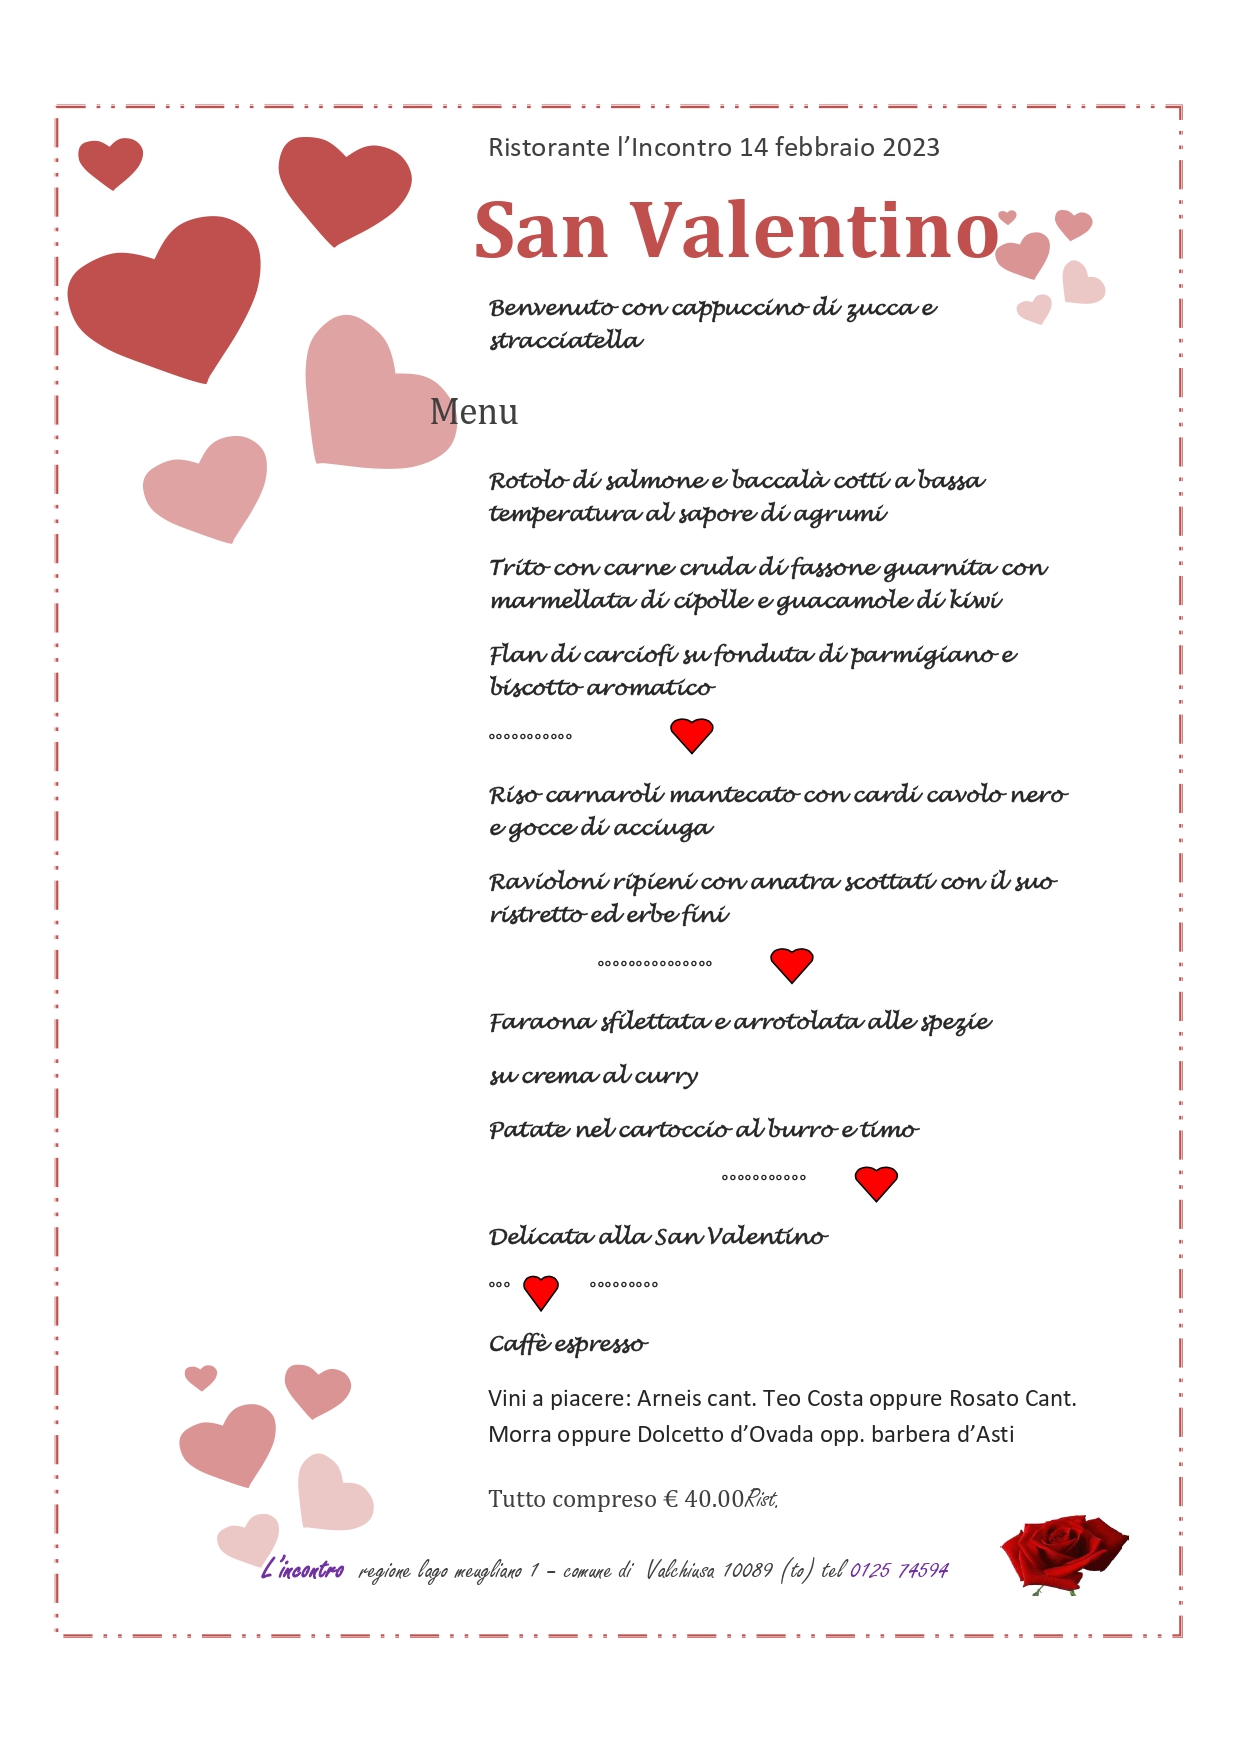 menu_san valentino_ristorante_incontro_2023